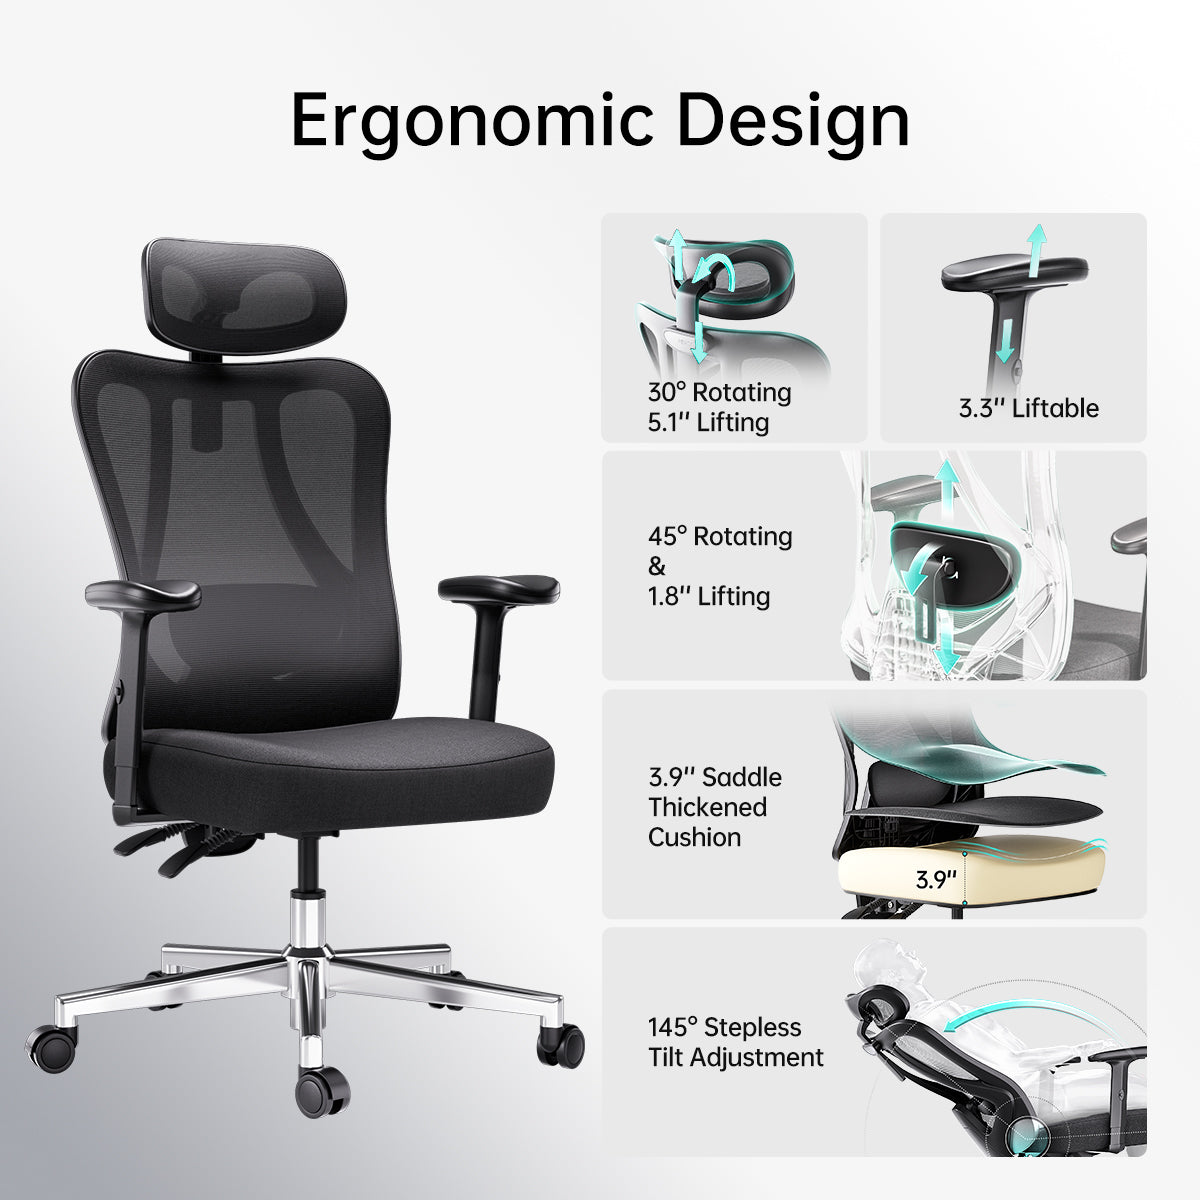 HBADA P3 Ergonomic Office Chair